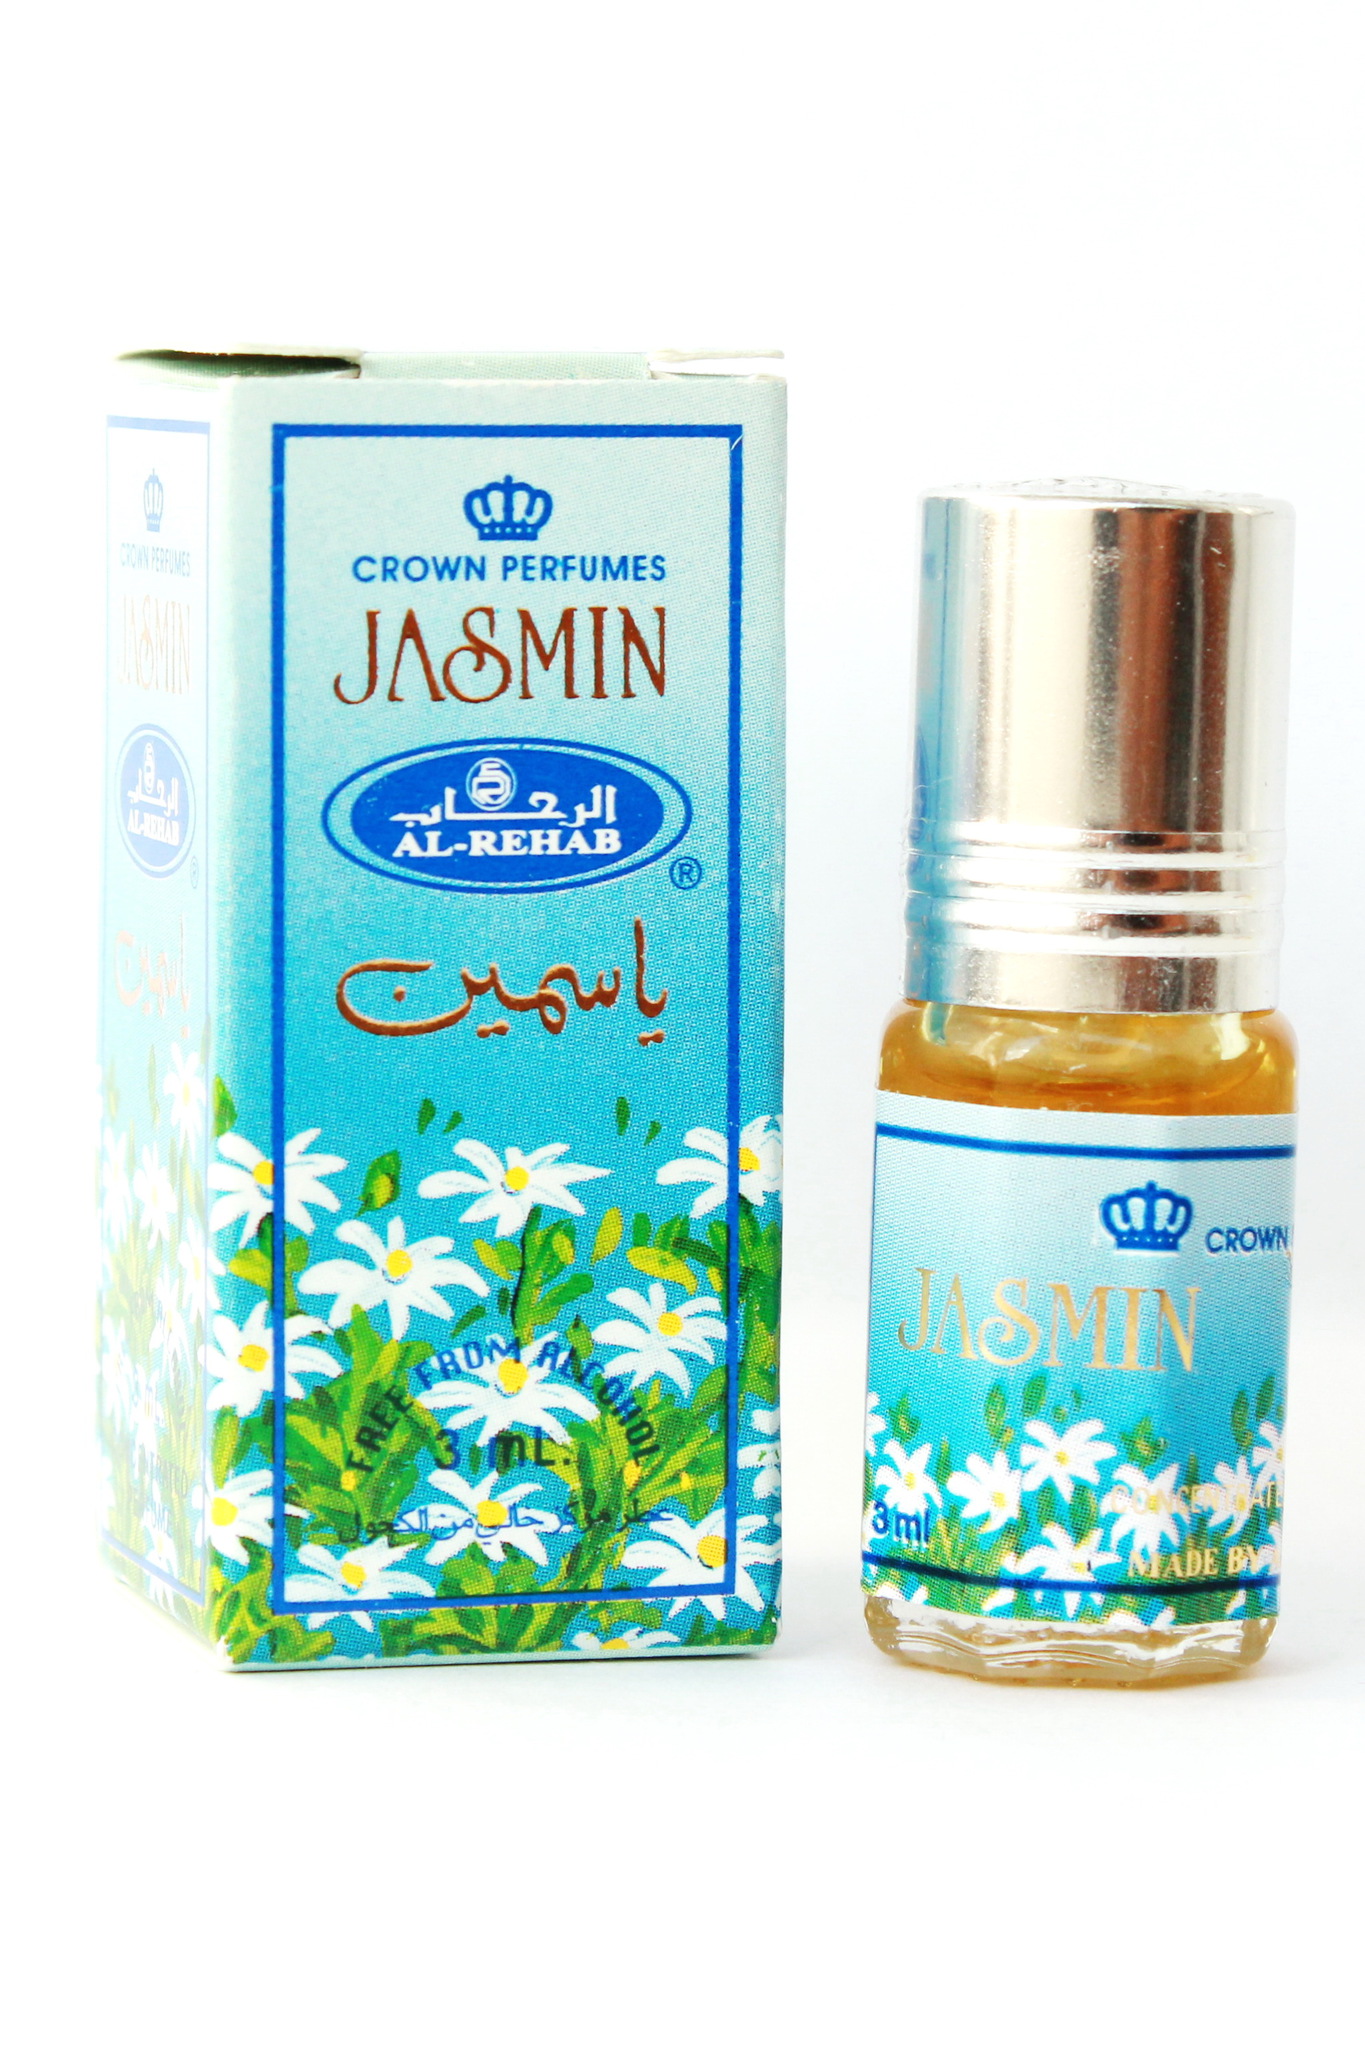 Jasmin Жасмин 3мл арабские масляные духи от Аль Рехаб Al Rehab